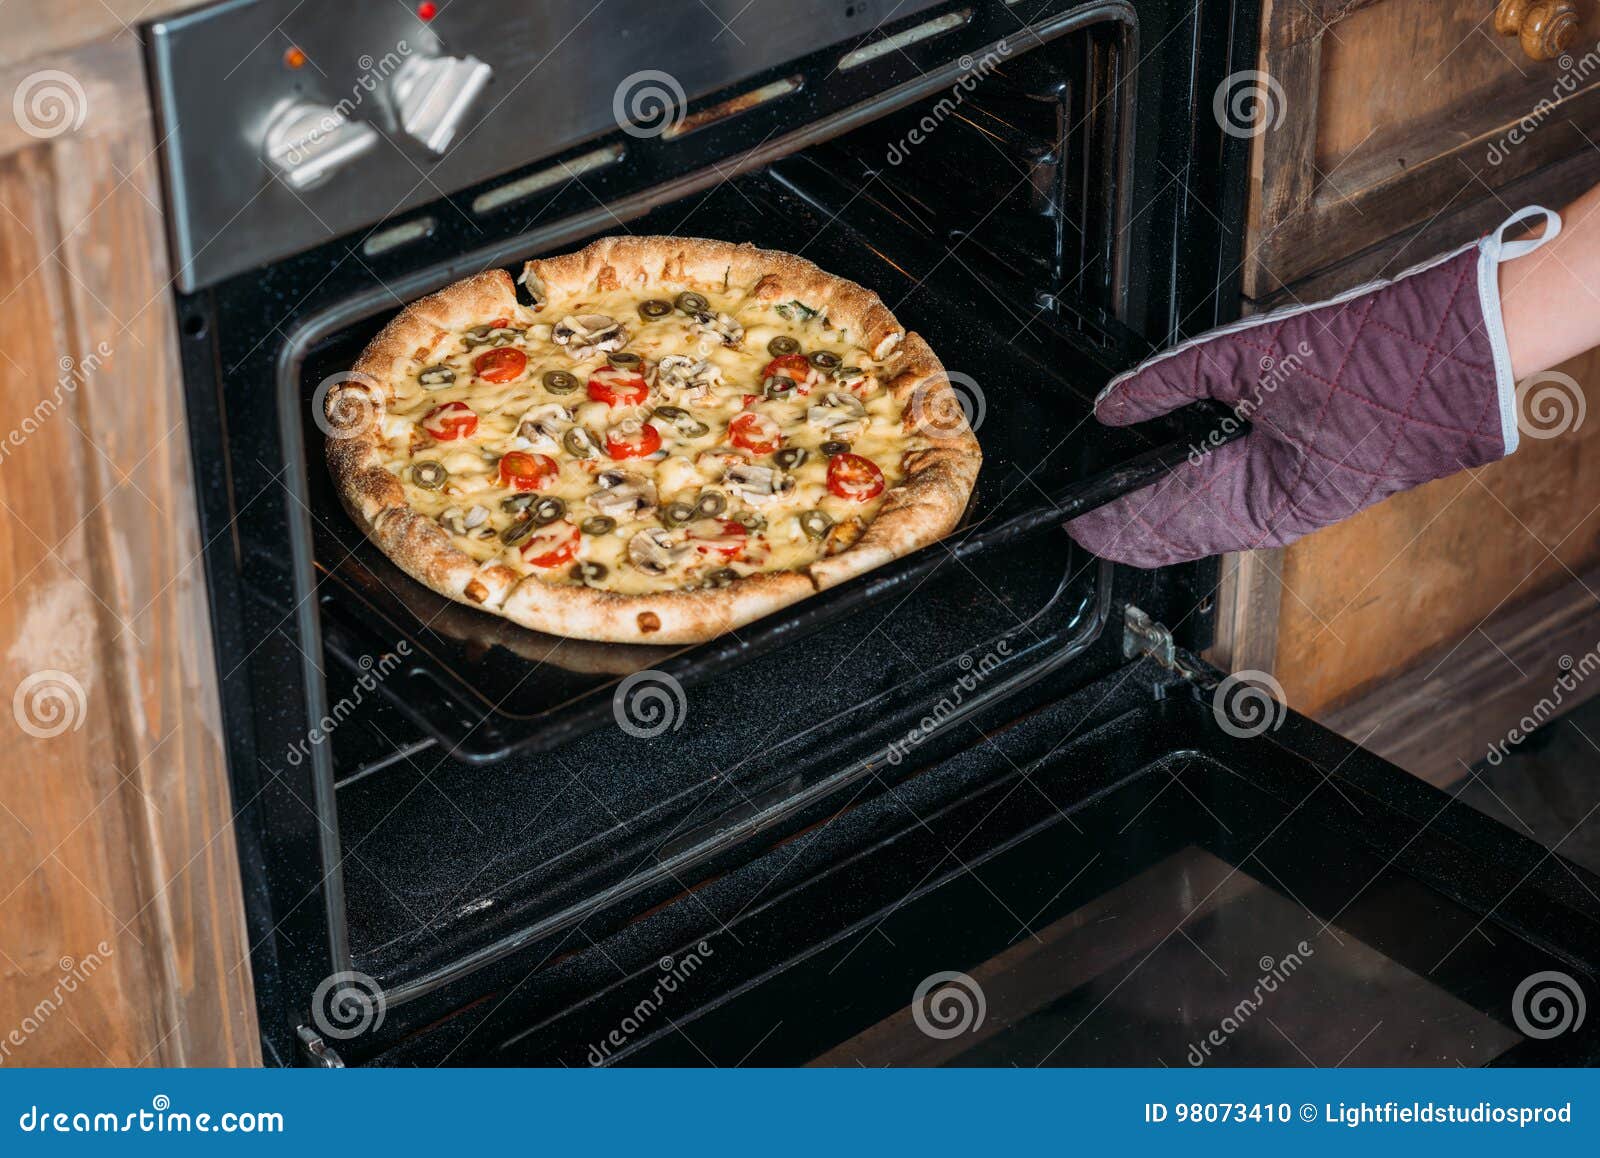 что положить в домашнюю пиццу в духовке фото 73